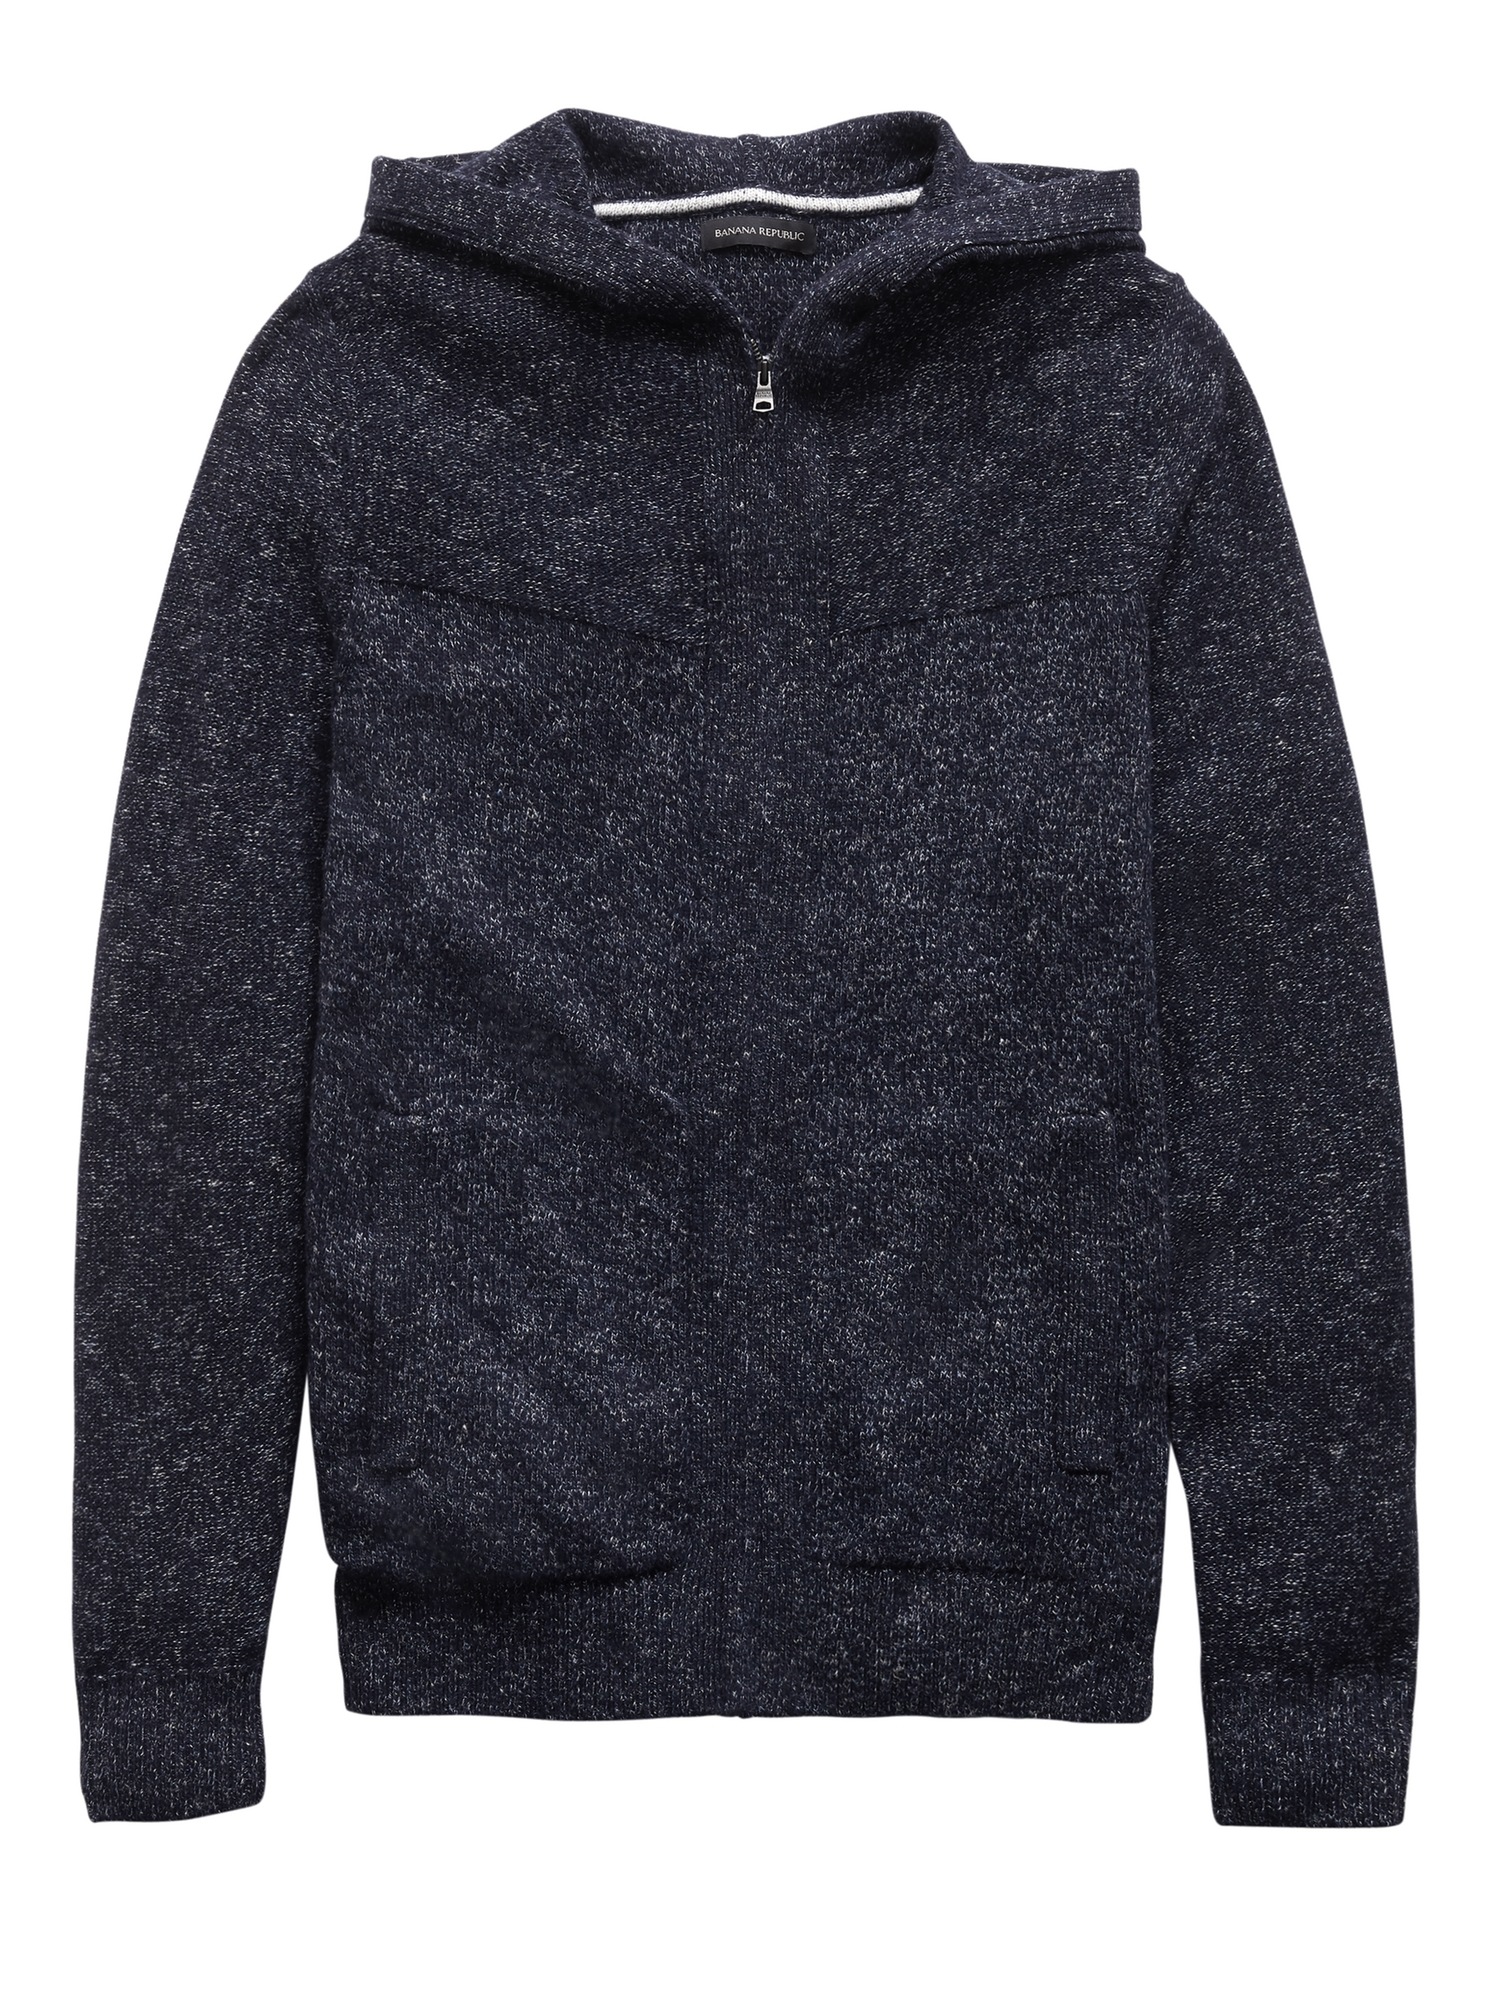 Space-Dye Sweater Hoodie